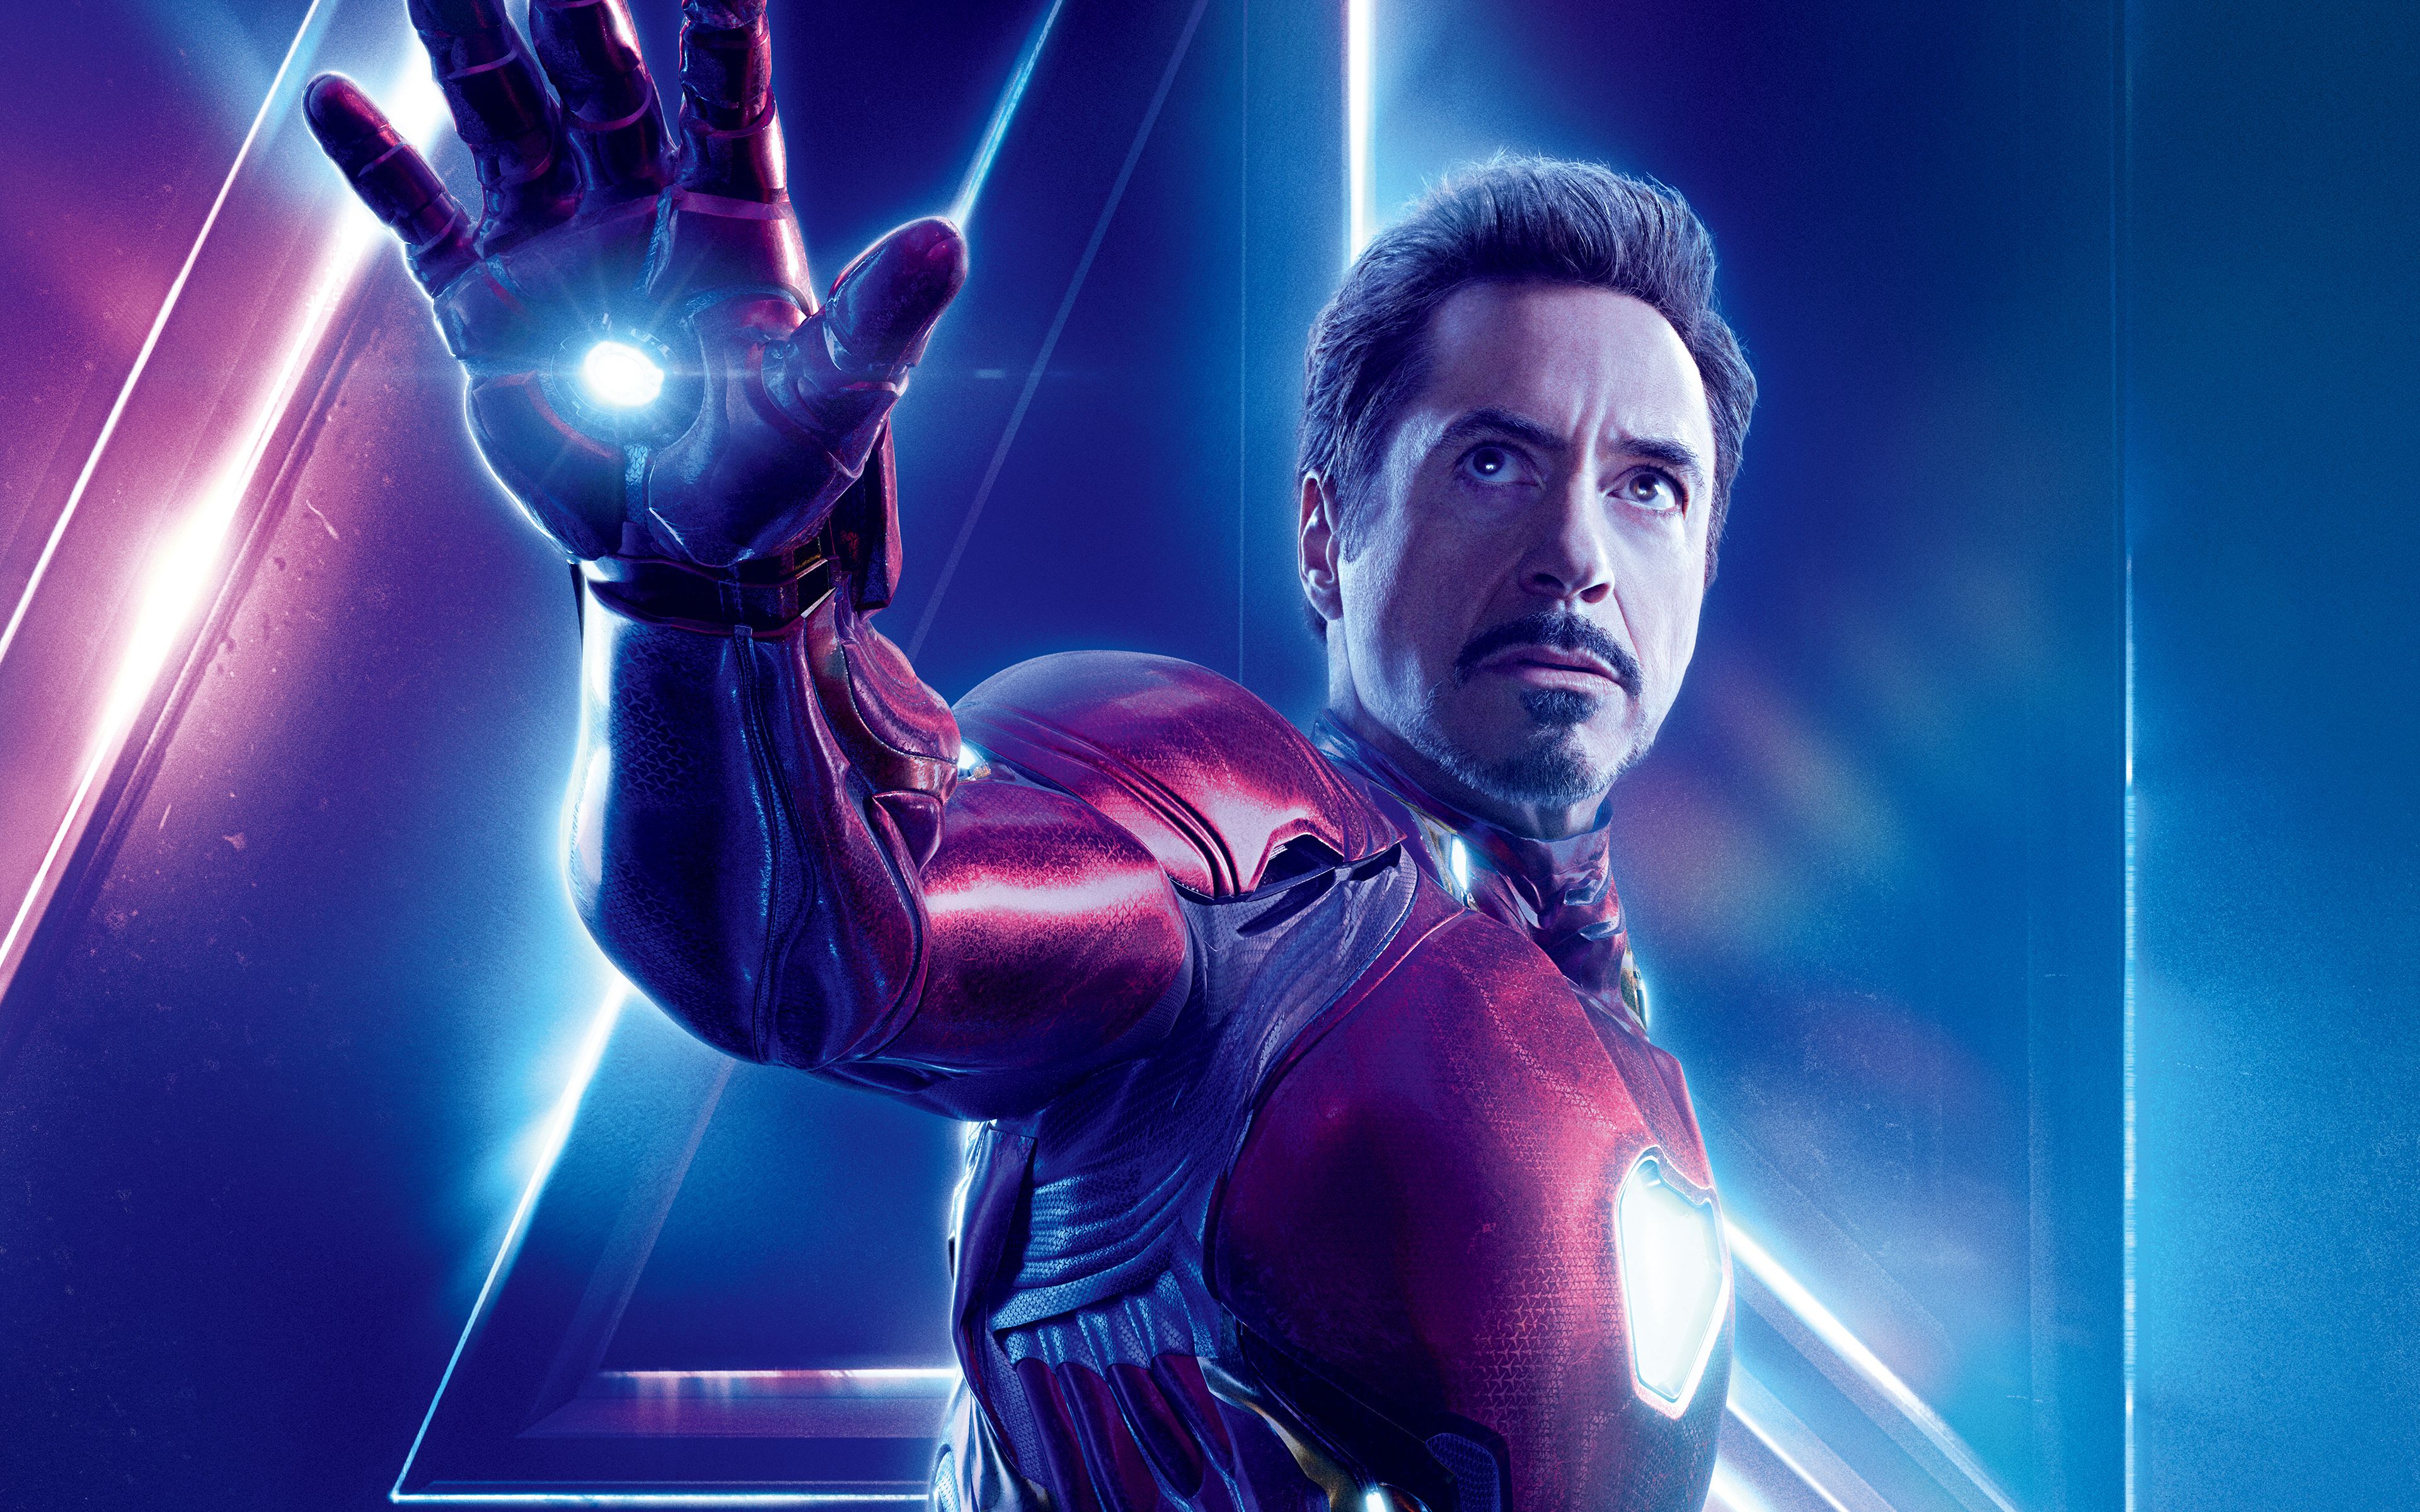 Iron Man in Avengers Infinity War 4K 8K Wallpaper. HD Wallpaper